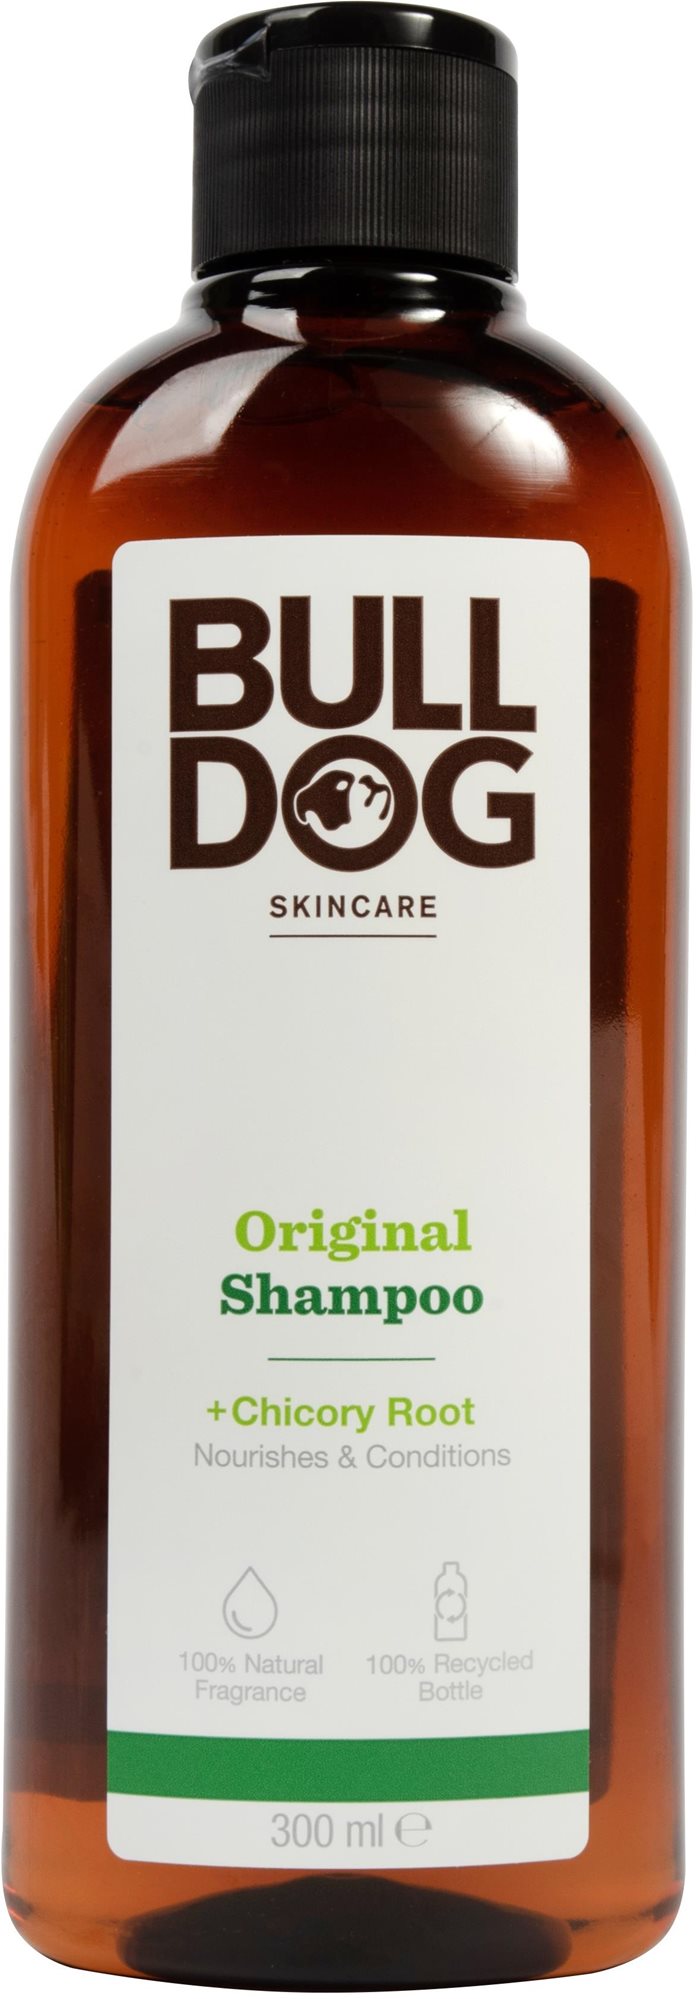 BULLDOG Original Shampoo Chicory Root 300 ml